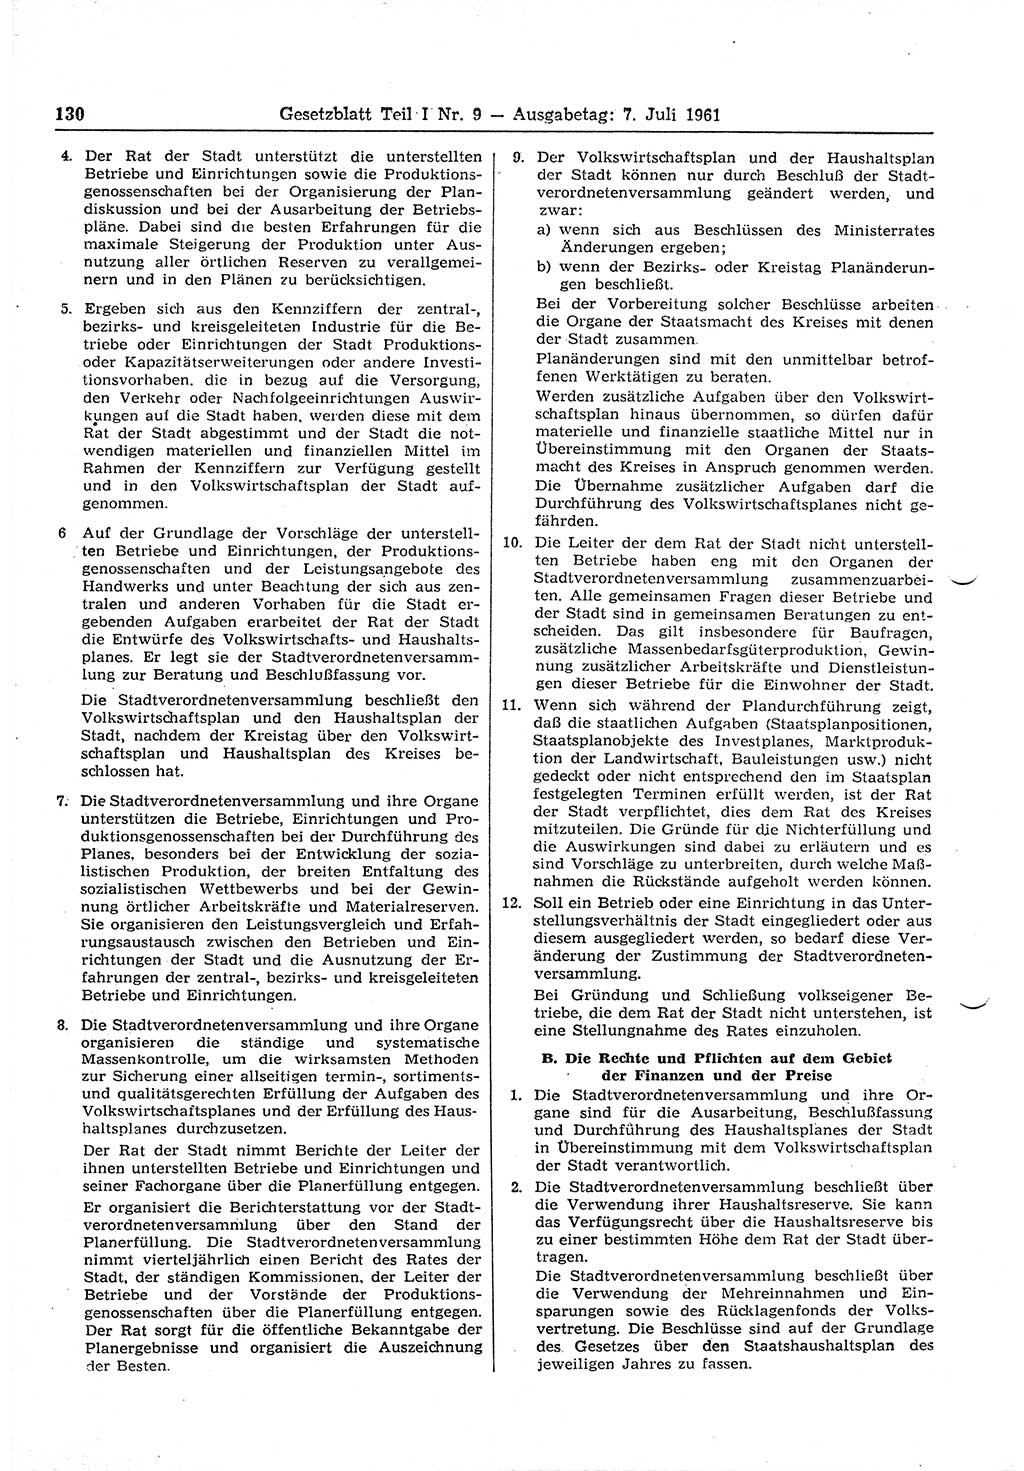 Gesetzblatt (GBl.) der Deutschen Demokratischen Republik (DDR) Teil Ⅰ 1961, Seite 130 (GBl. DDR Ⅰ 1961, S. 130)